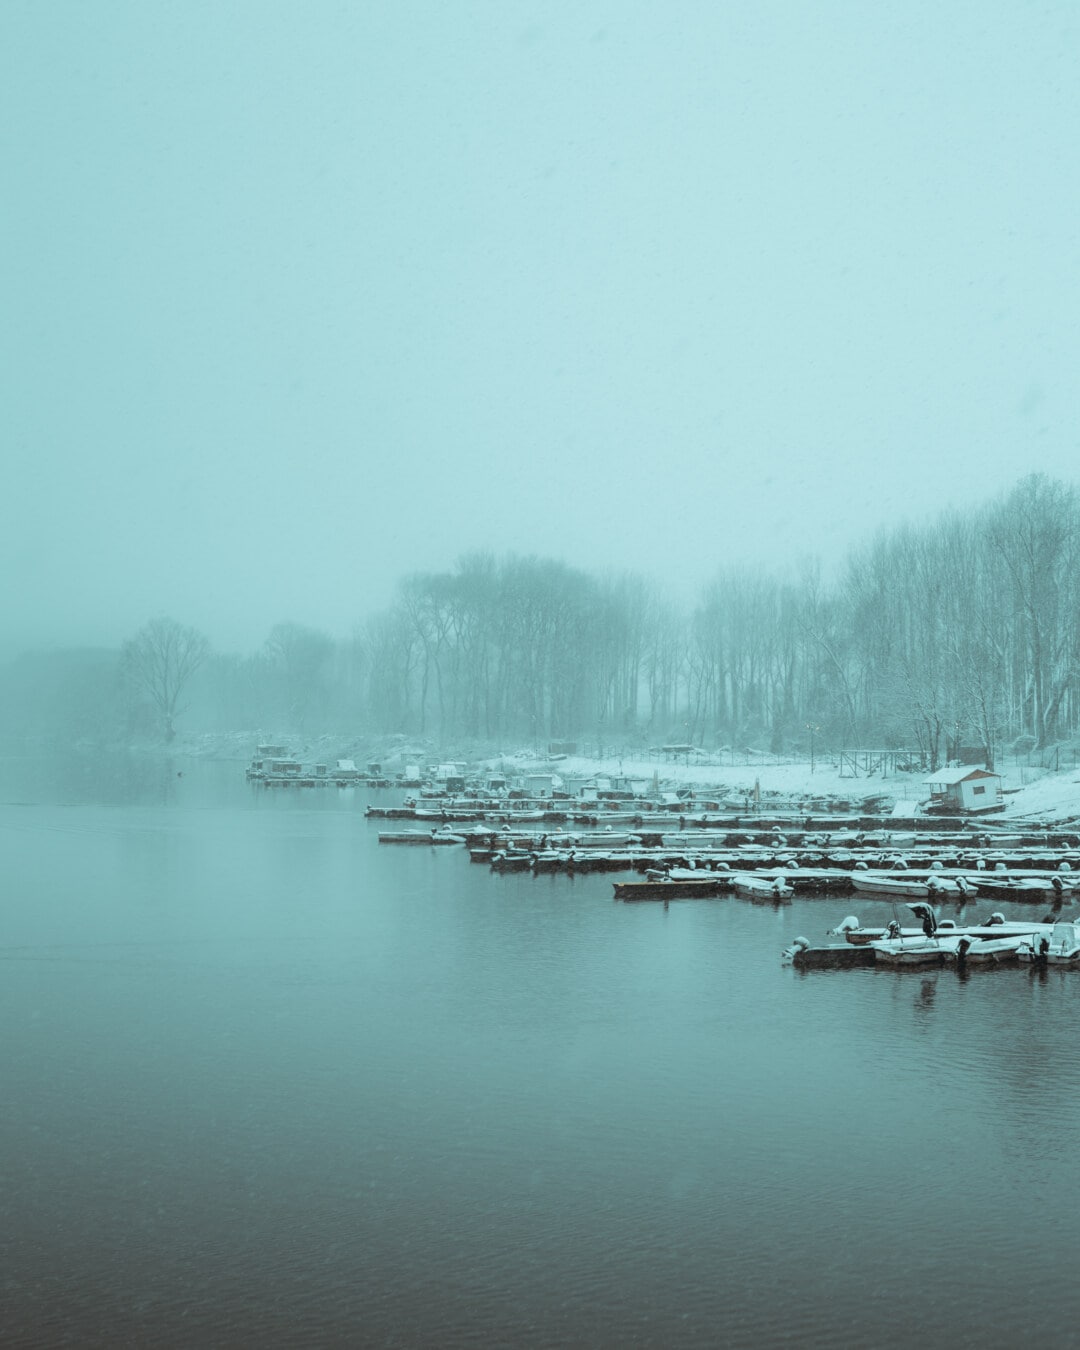 ομίχλη, το πρωί, Χειμώνας, δίπλα στη λίμνη, Νοέμβριος, βάρκα ποτάμι, προβλήτα, νερό, ομίχλη, χιόνι